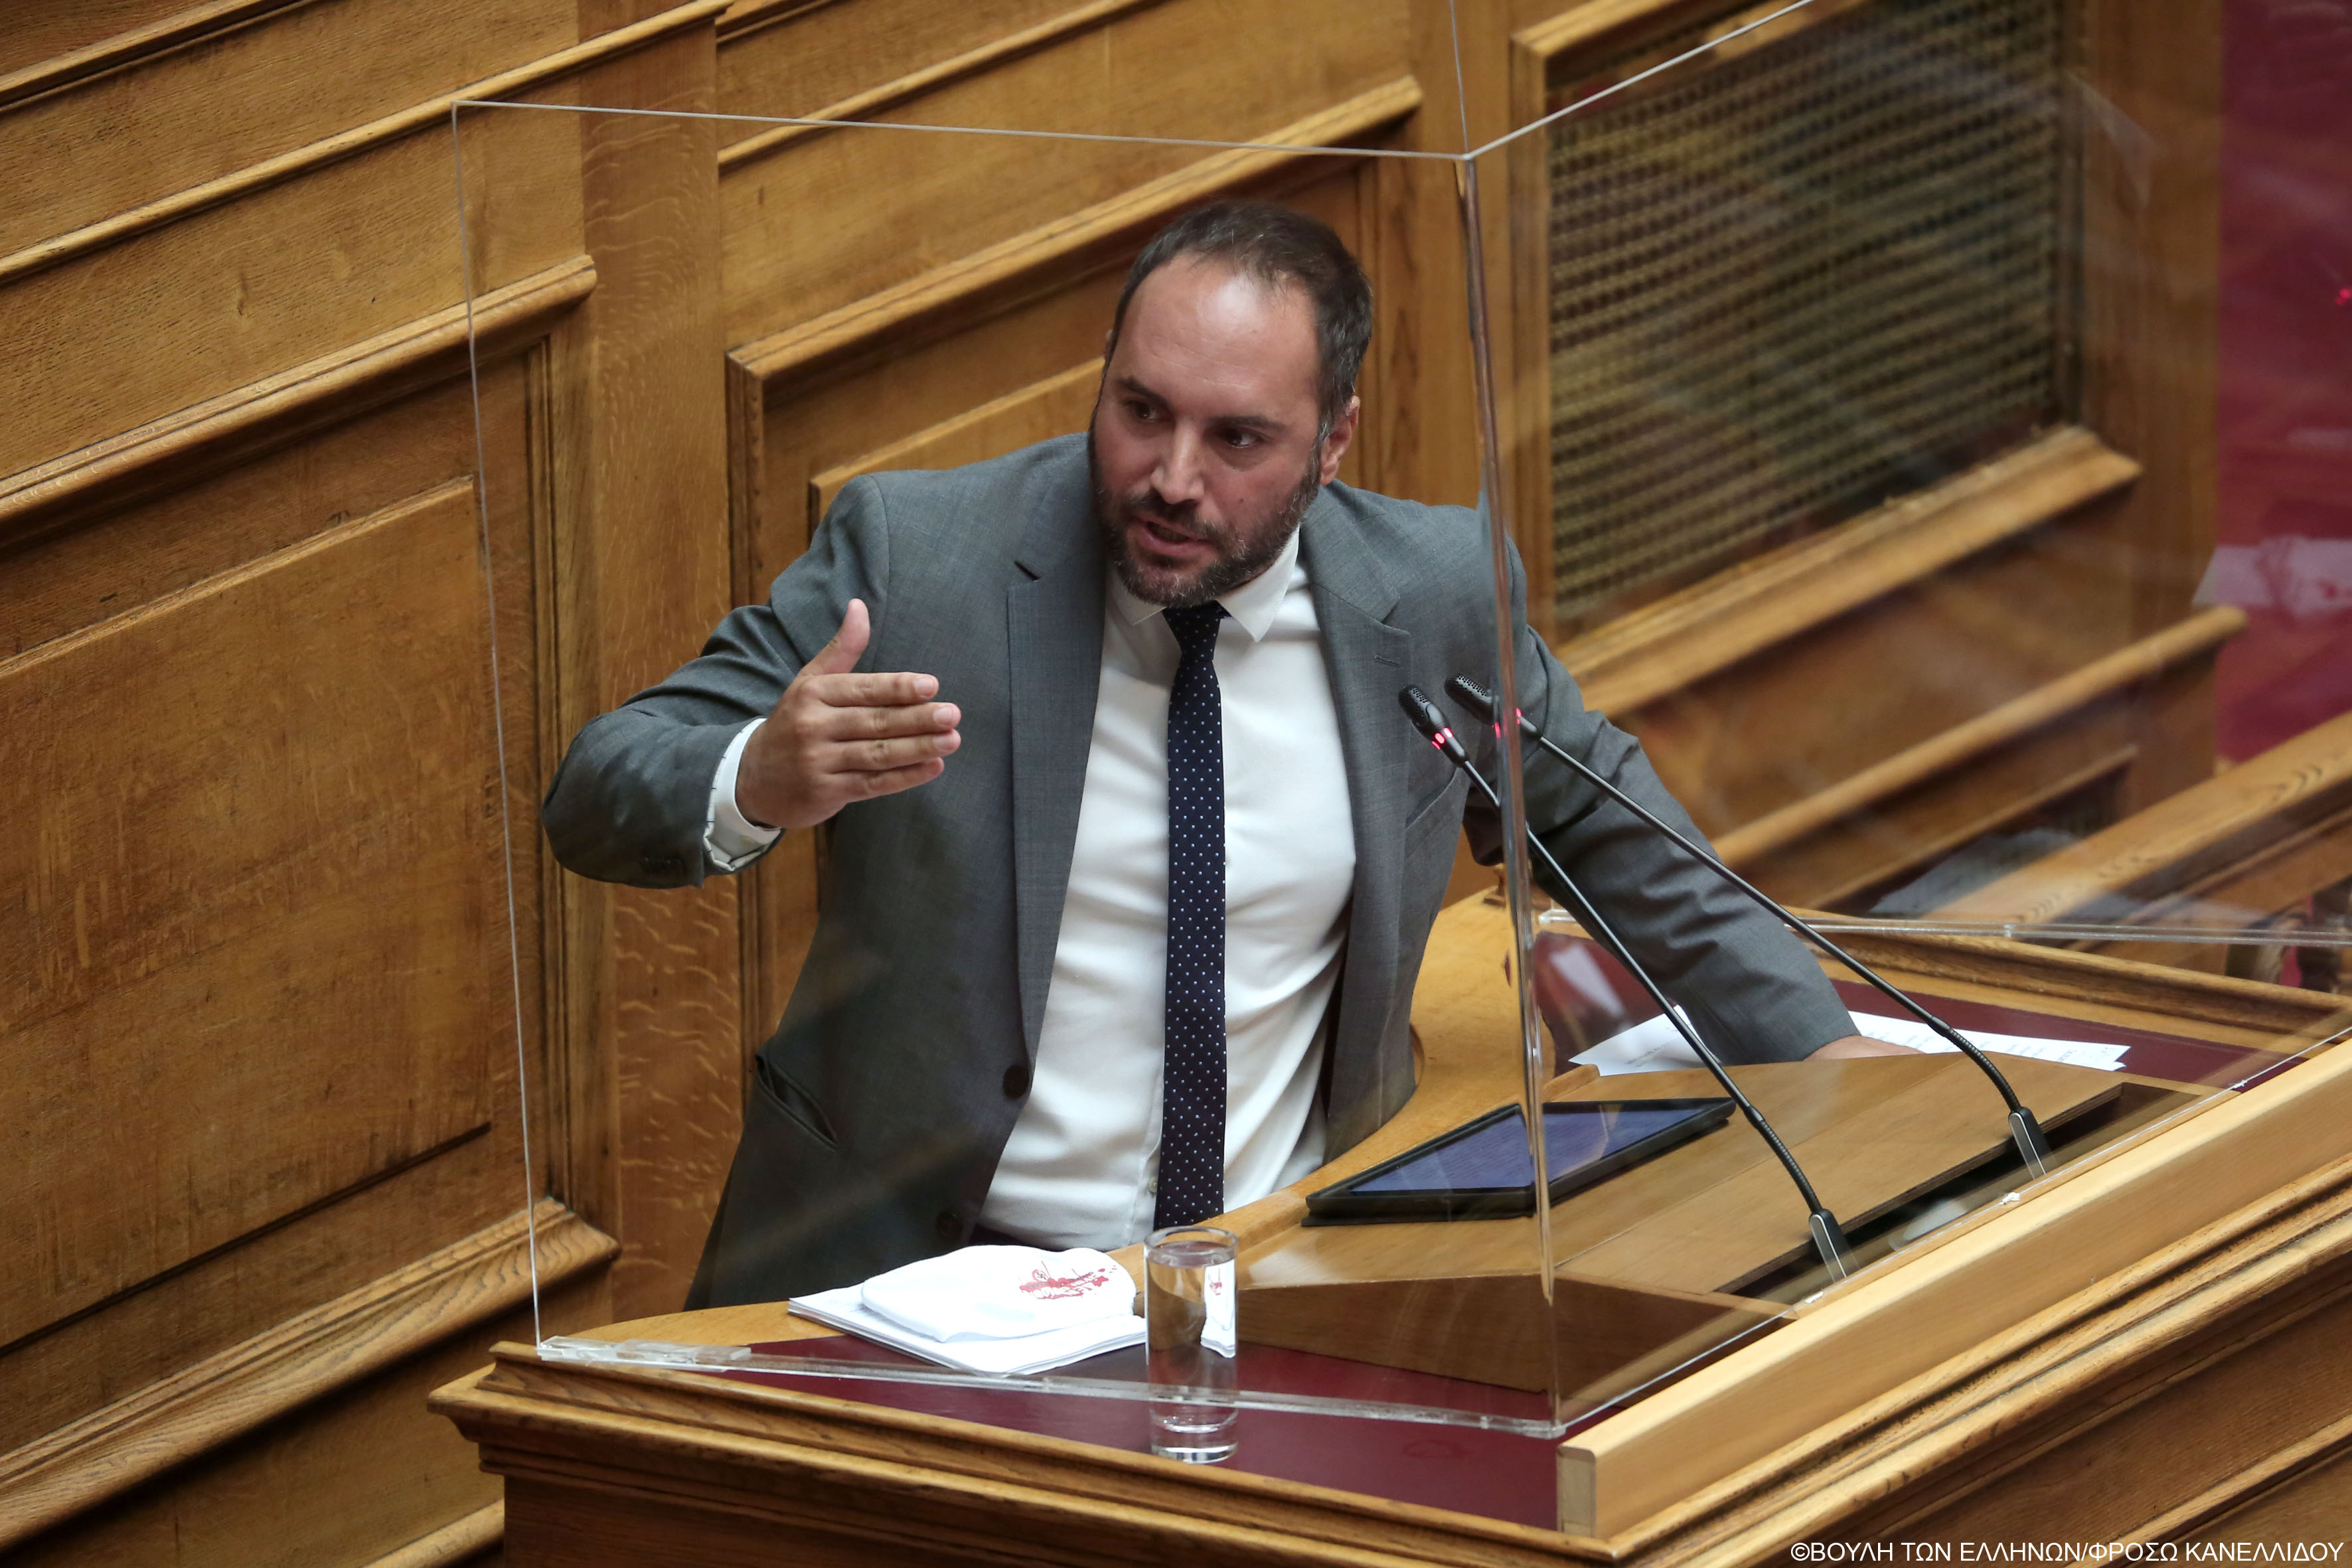 Μ. Χατζηγιαννάκης: Η κυβέρνηση διχάζει τους πολίτες και μετατρέπει τους καταστηματάρχες σε ελεγκτές